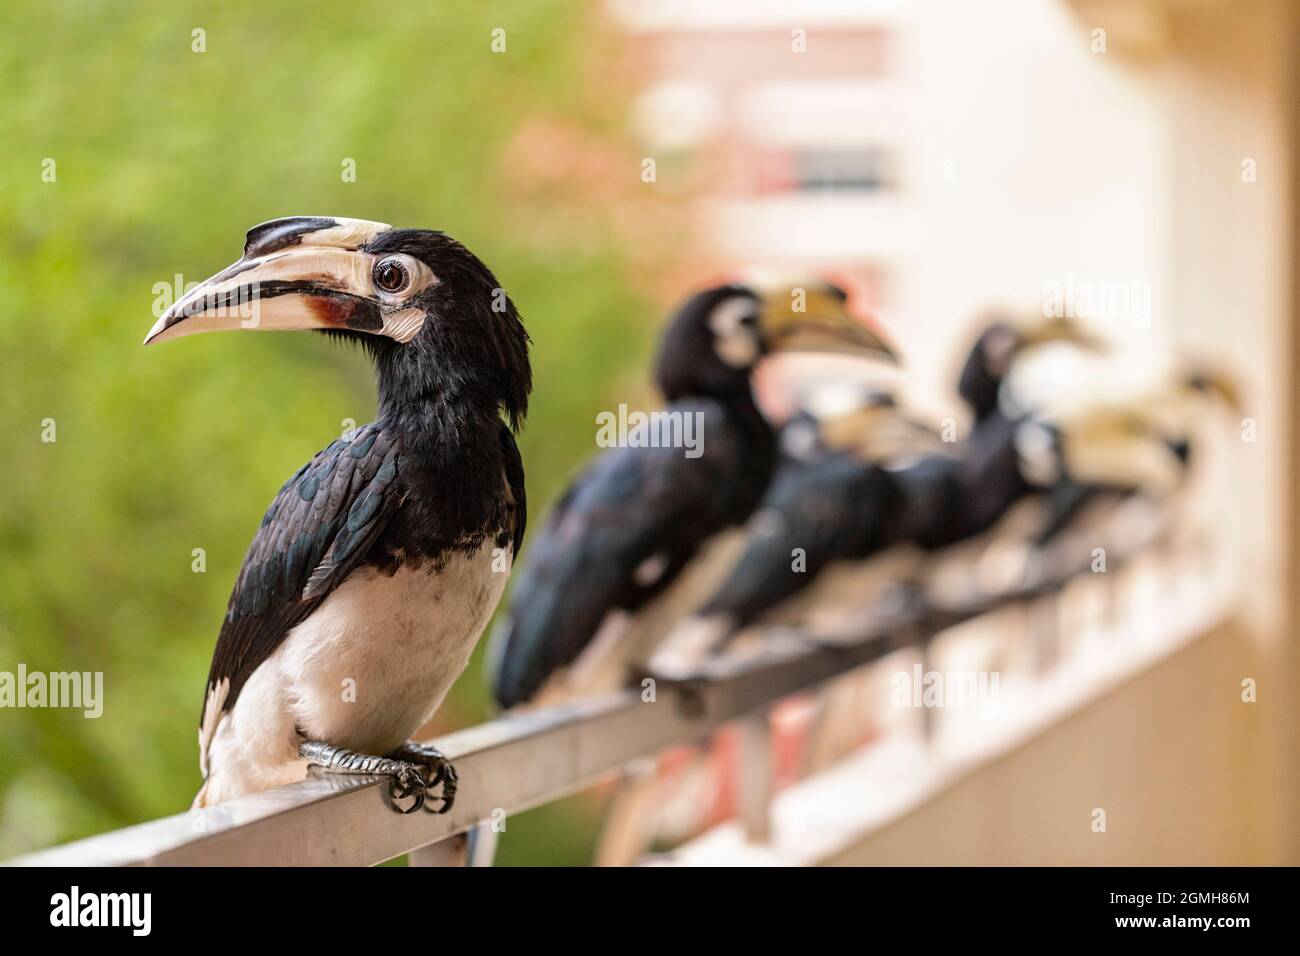 Un troupeau de Peed Hornbill oriental perch sur un balcon d'appartement attendant d'être nourri à la main des fruits par les résidents locaux dans un logement public, Singapour Banque D'Images